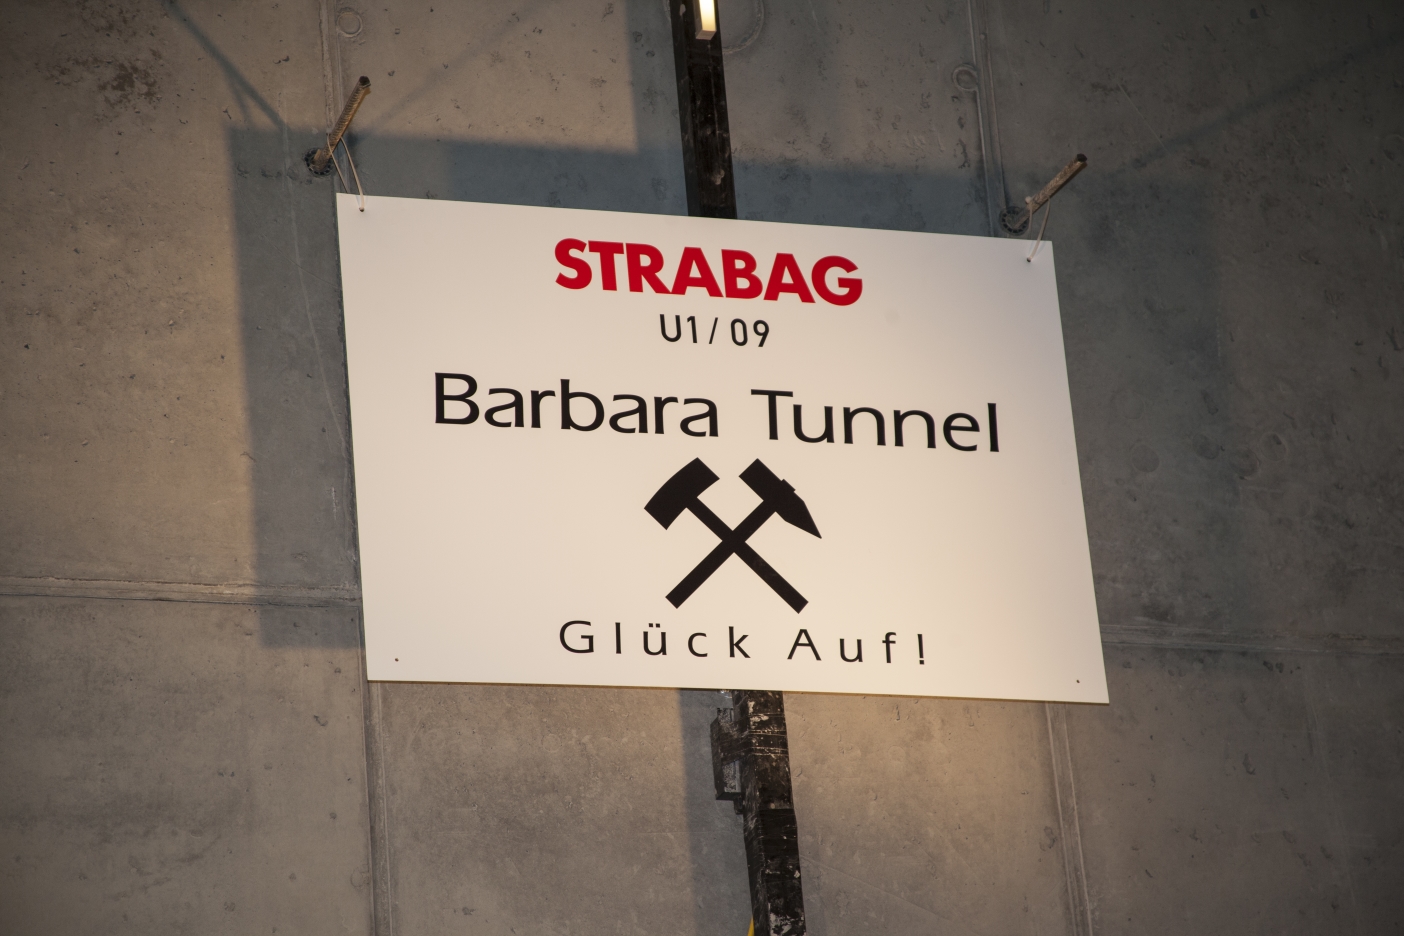 Tunnelanschlag in dem rund 30 Meter unter der A23 verlaufenden Tunnel bei der künftigen U1-Station Altes Landgut.

Tunnelpatin der künftigen Station Altes Landgut ist Nationalratspräsidentin Barbara Prammer.